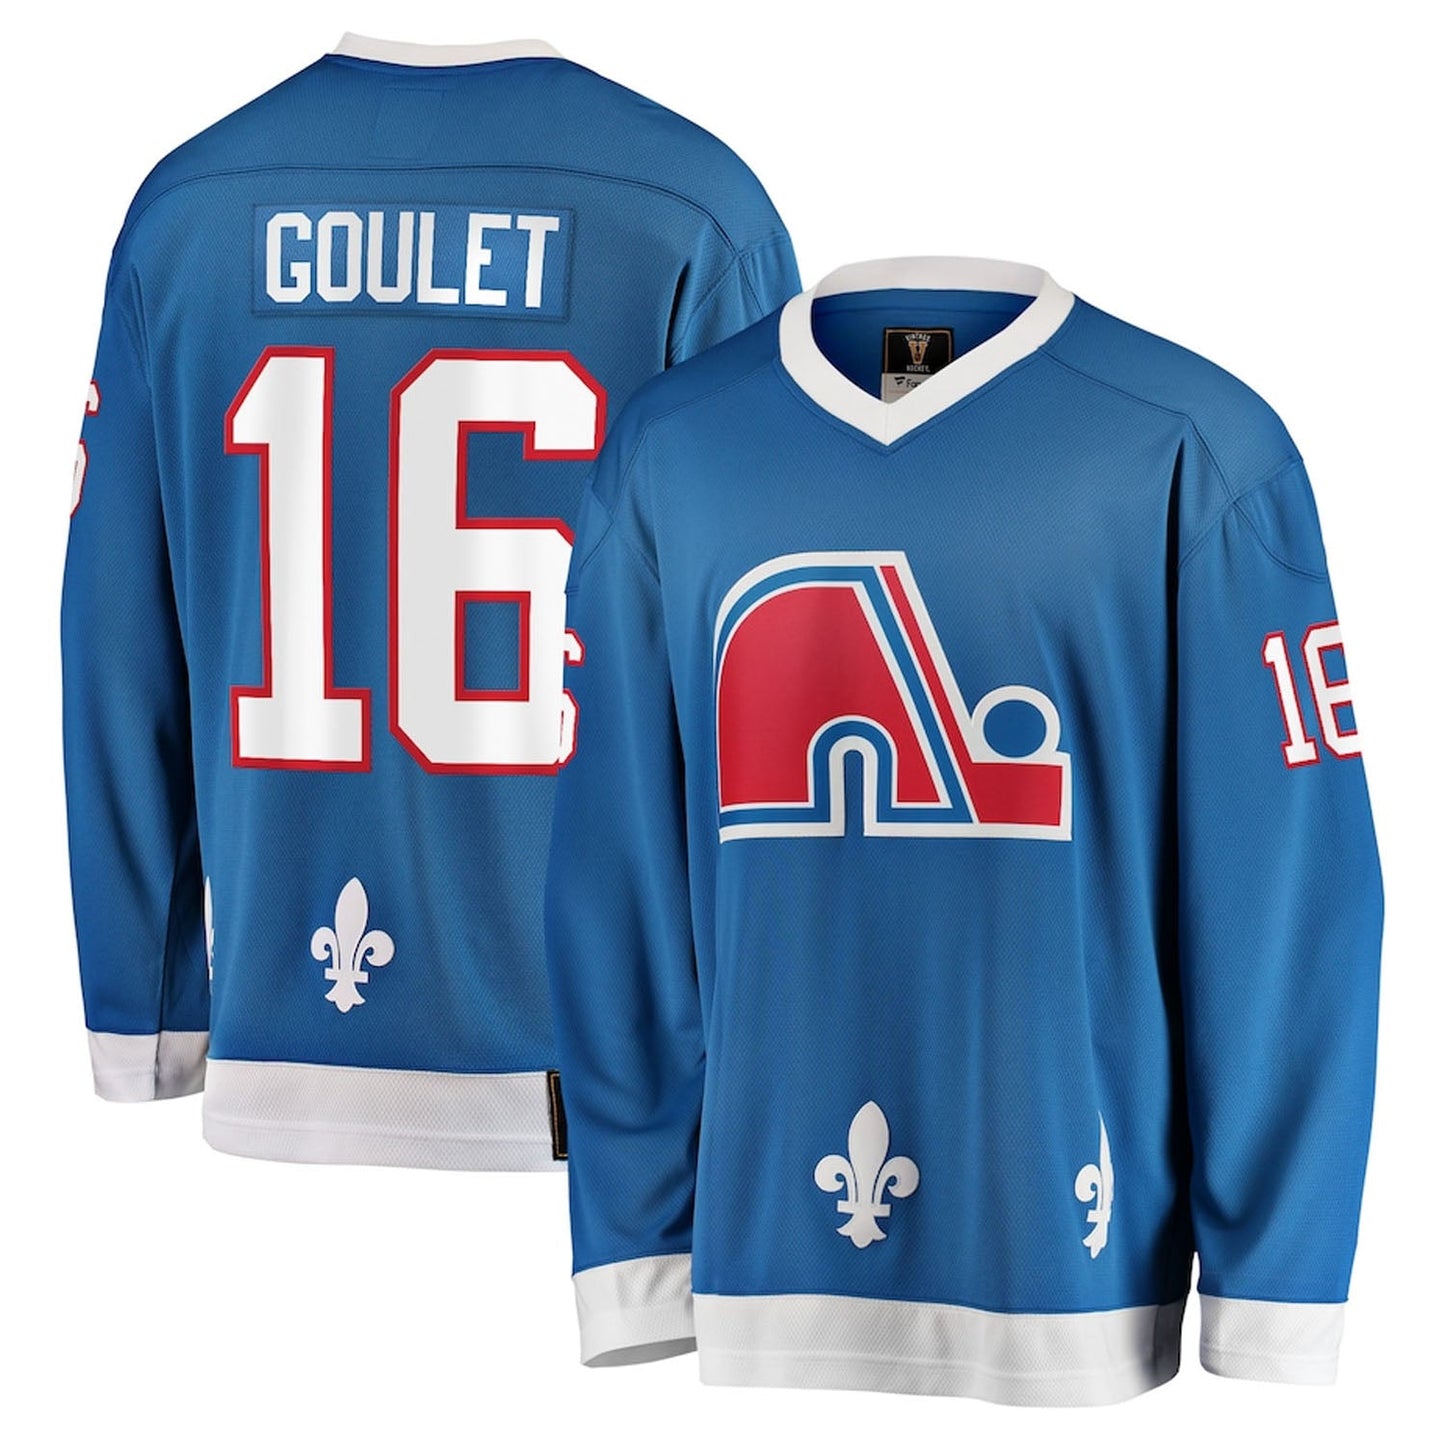 NHL Michel Goulet Quebec Nordiques 16 Jersey